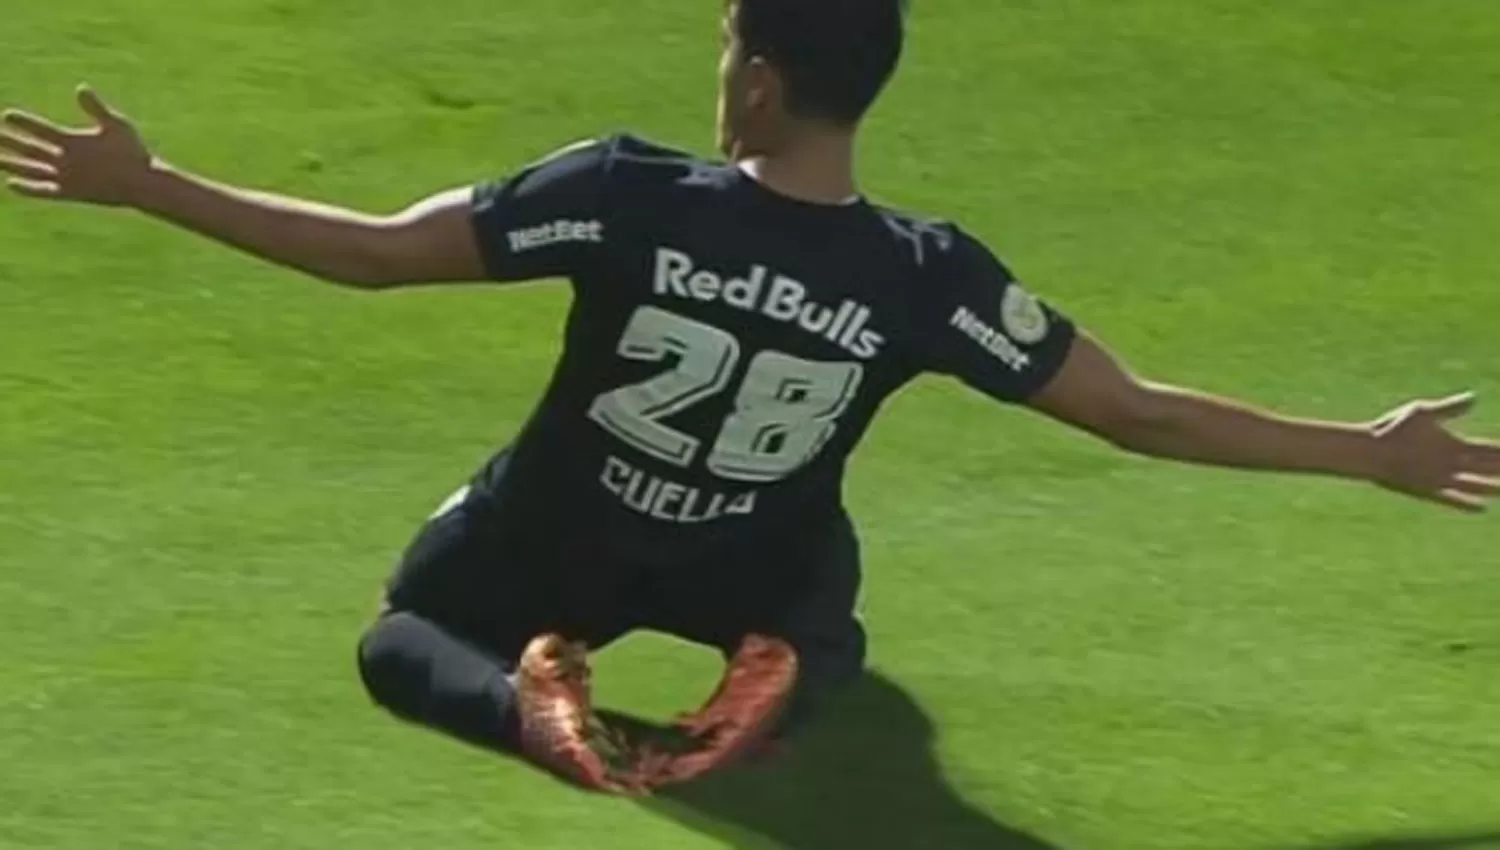 EL FESTEJO. El tucumano Cuello celebró con los brazos abiertos su segundo gol con la camiseta de Bragantino.